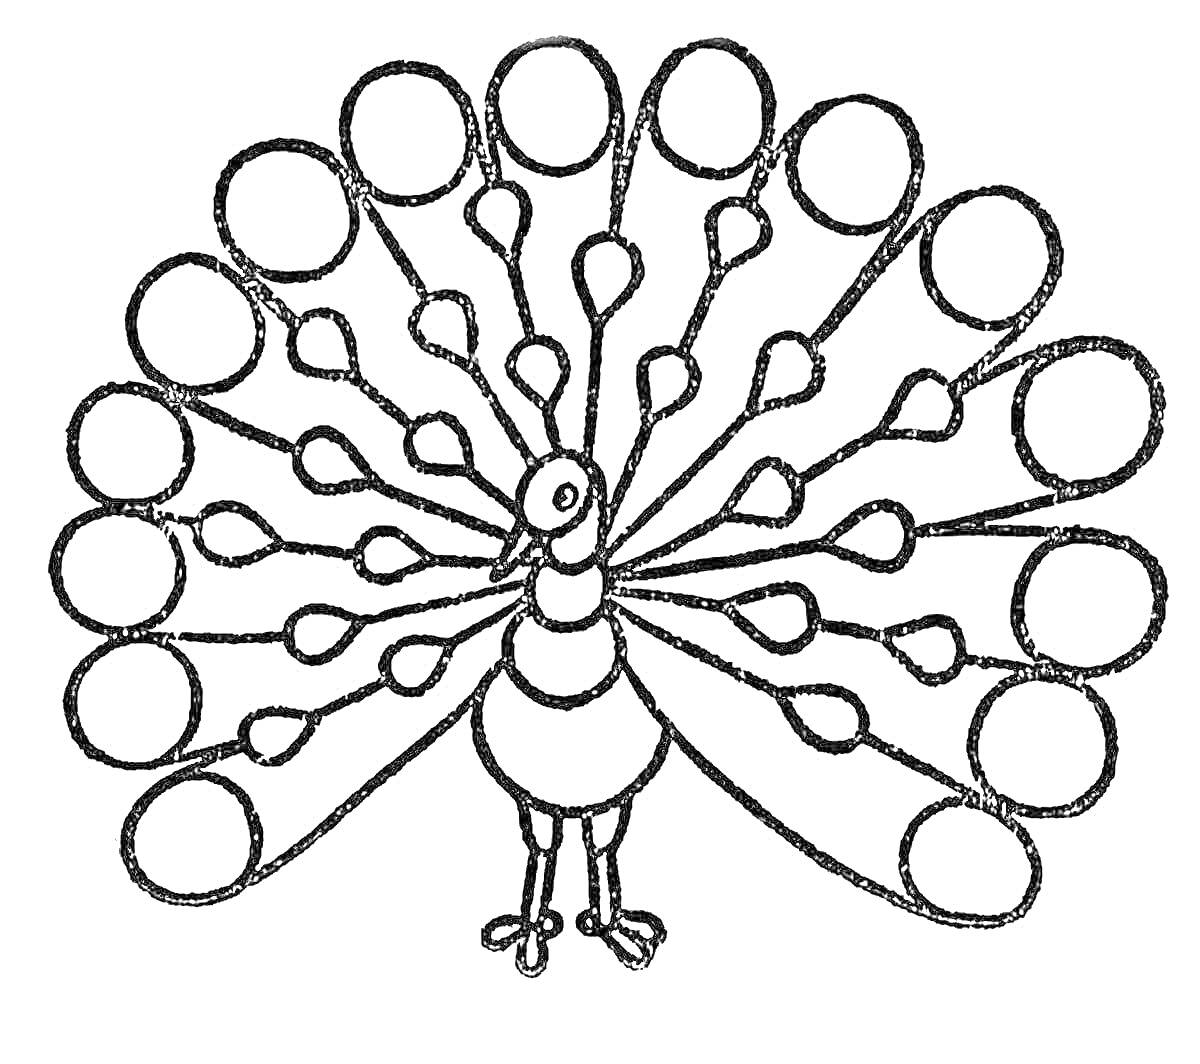 Раскраска Павлин с распушенным хвостом с круглыми и каплевидными элементами